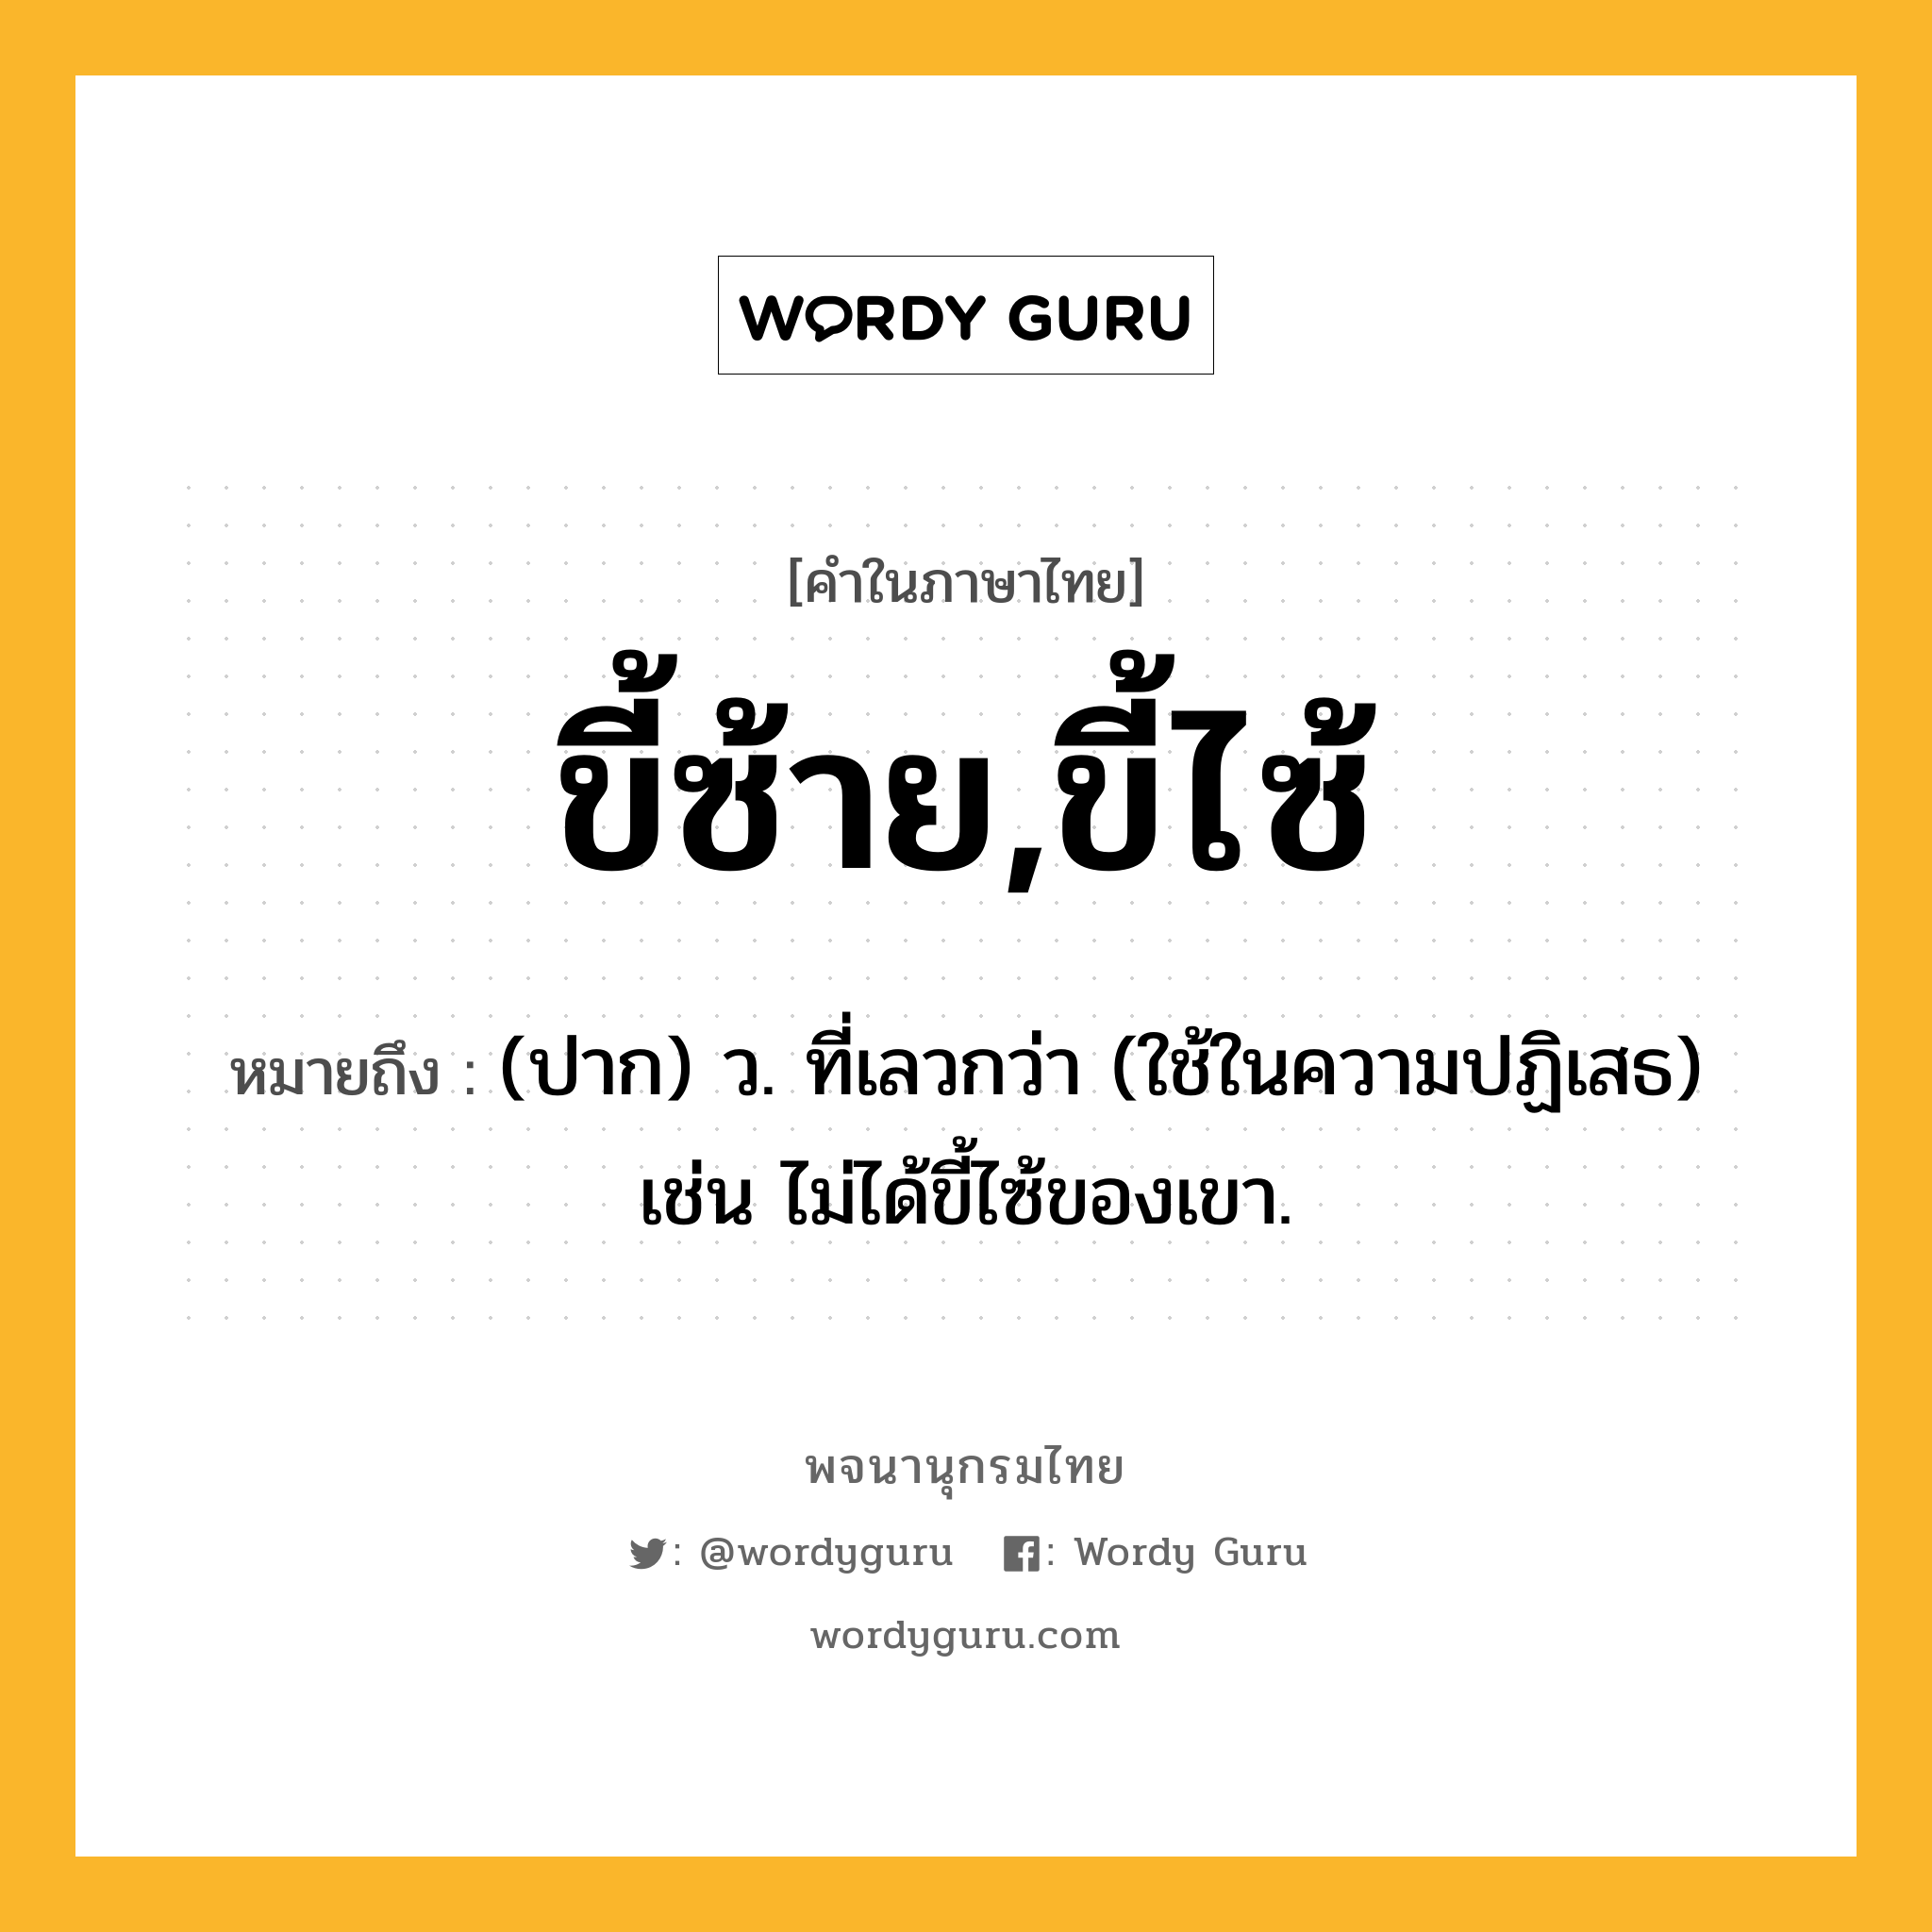 ขี้ซ้าย,ขี้ไซ้ หมายถึงอะไร?, คำในภาษาไทย ขี้ซ้าย,ขี้ไซ้ หมายถึง (ปาก) ว. ที่เลวกว่า (ใช้ในความปฏิเสธ) เช่น ไม่ได้ขี้ไซ้ของเขา.